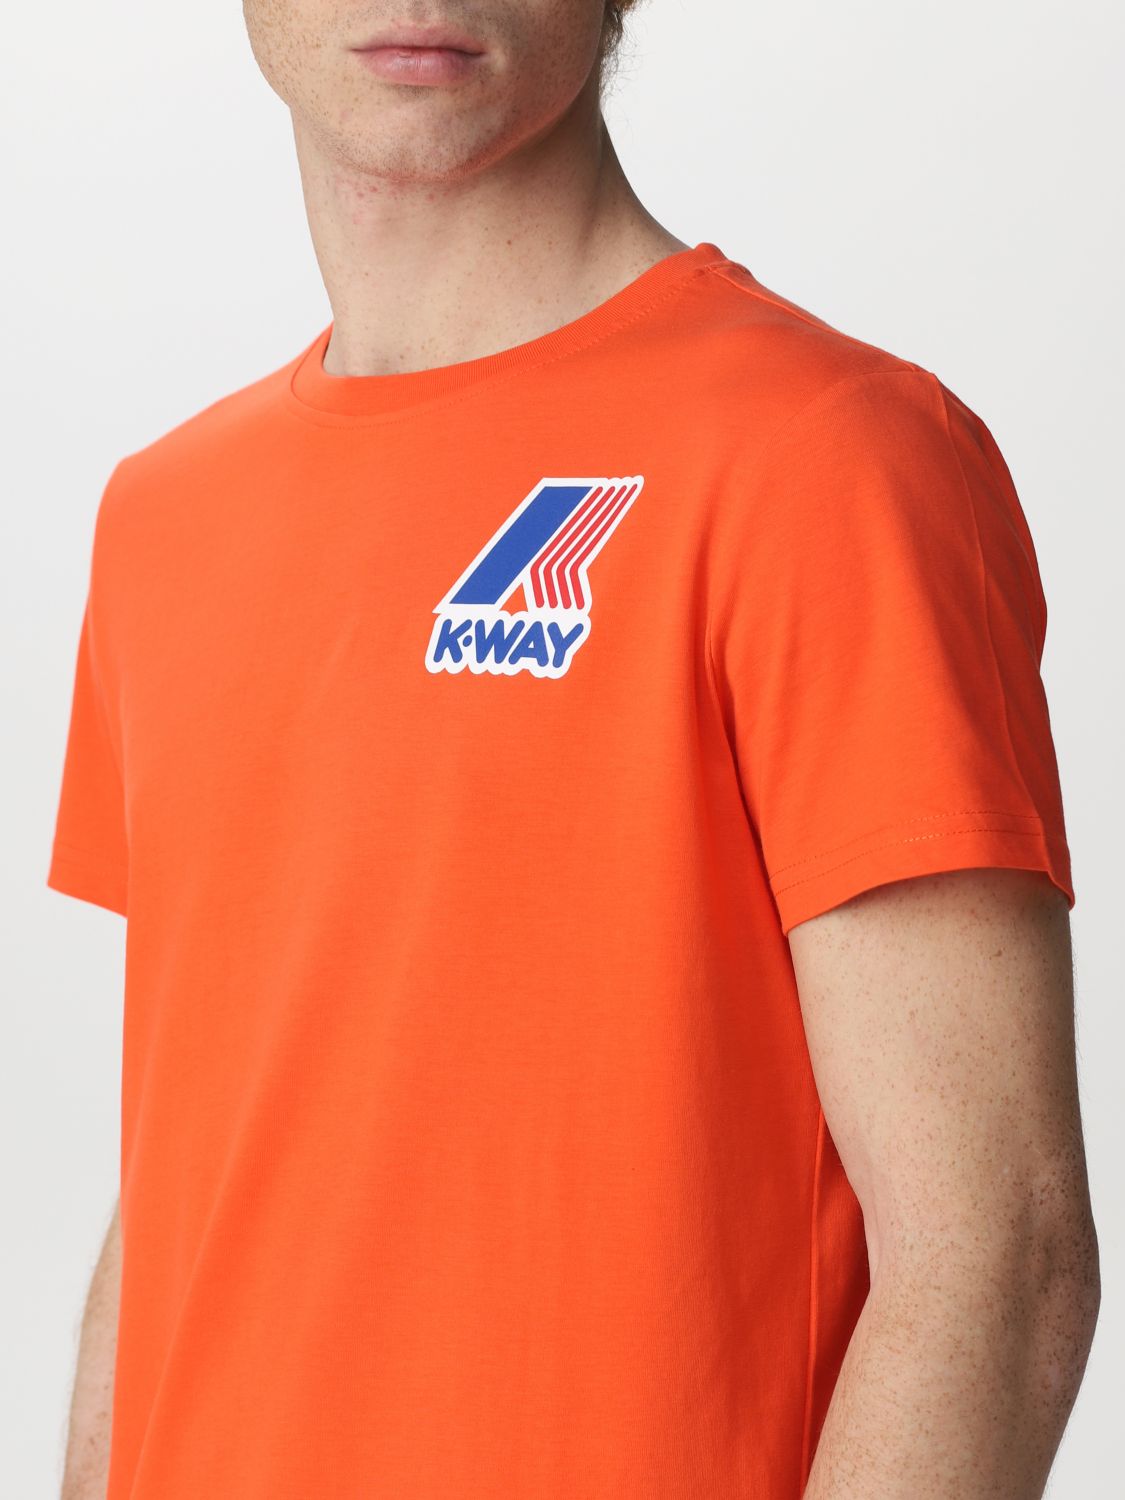 Tシャツ K-Way: Tシャツ メンズ K-way オレンジ 3